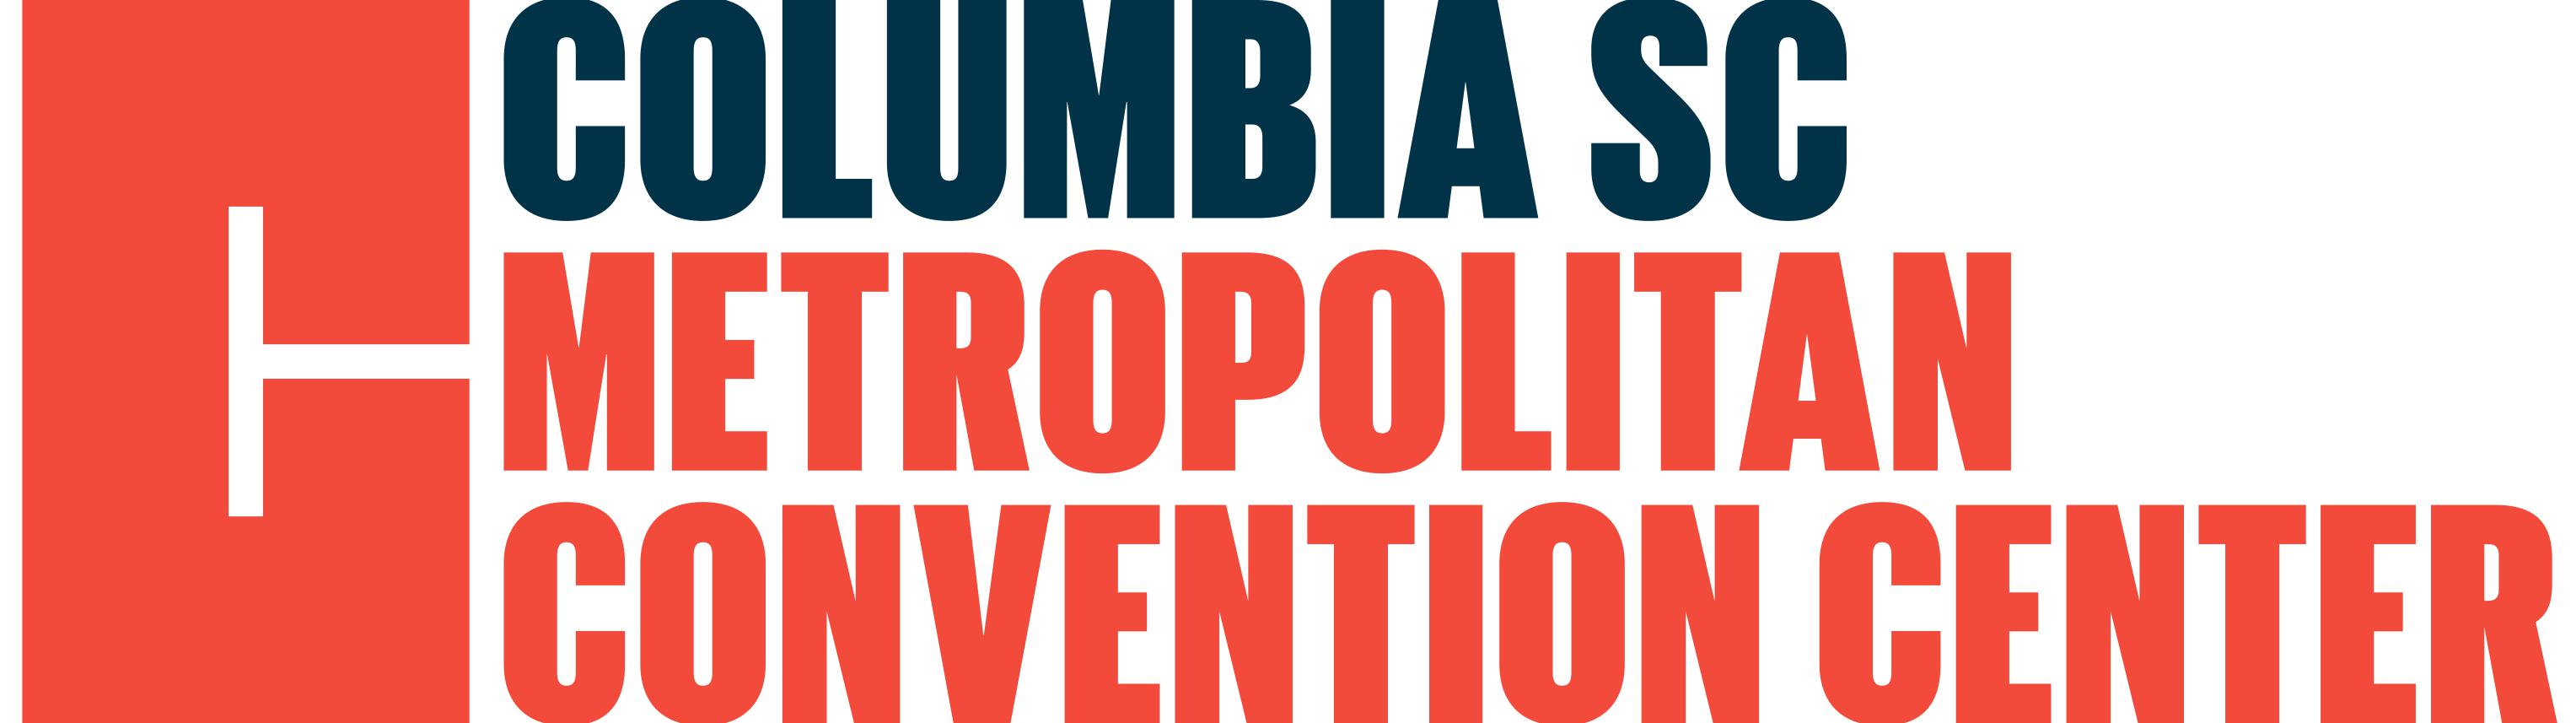 Columbia SC Metropolitan Convention Center logo